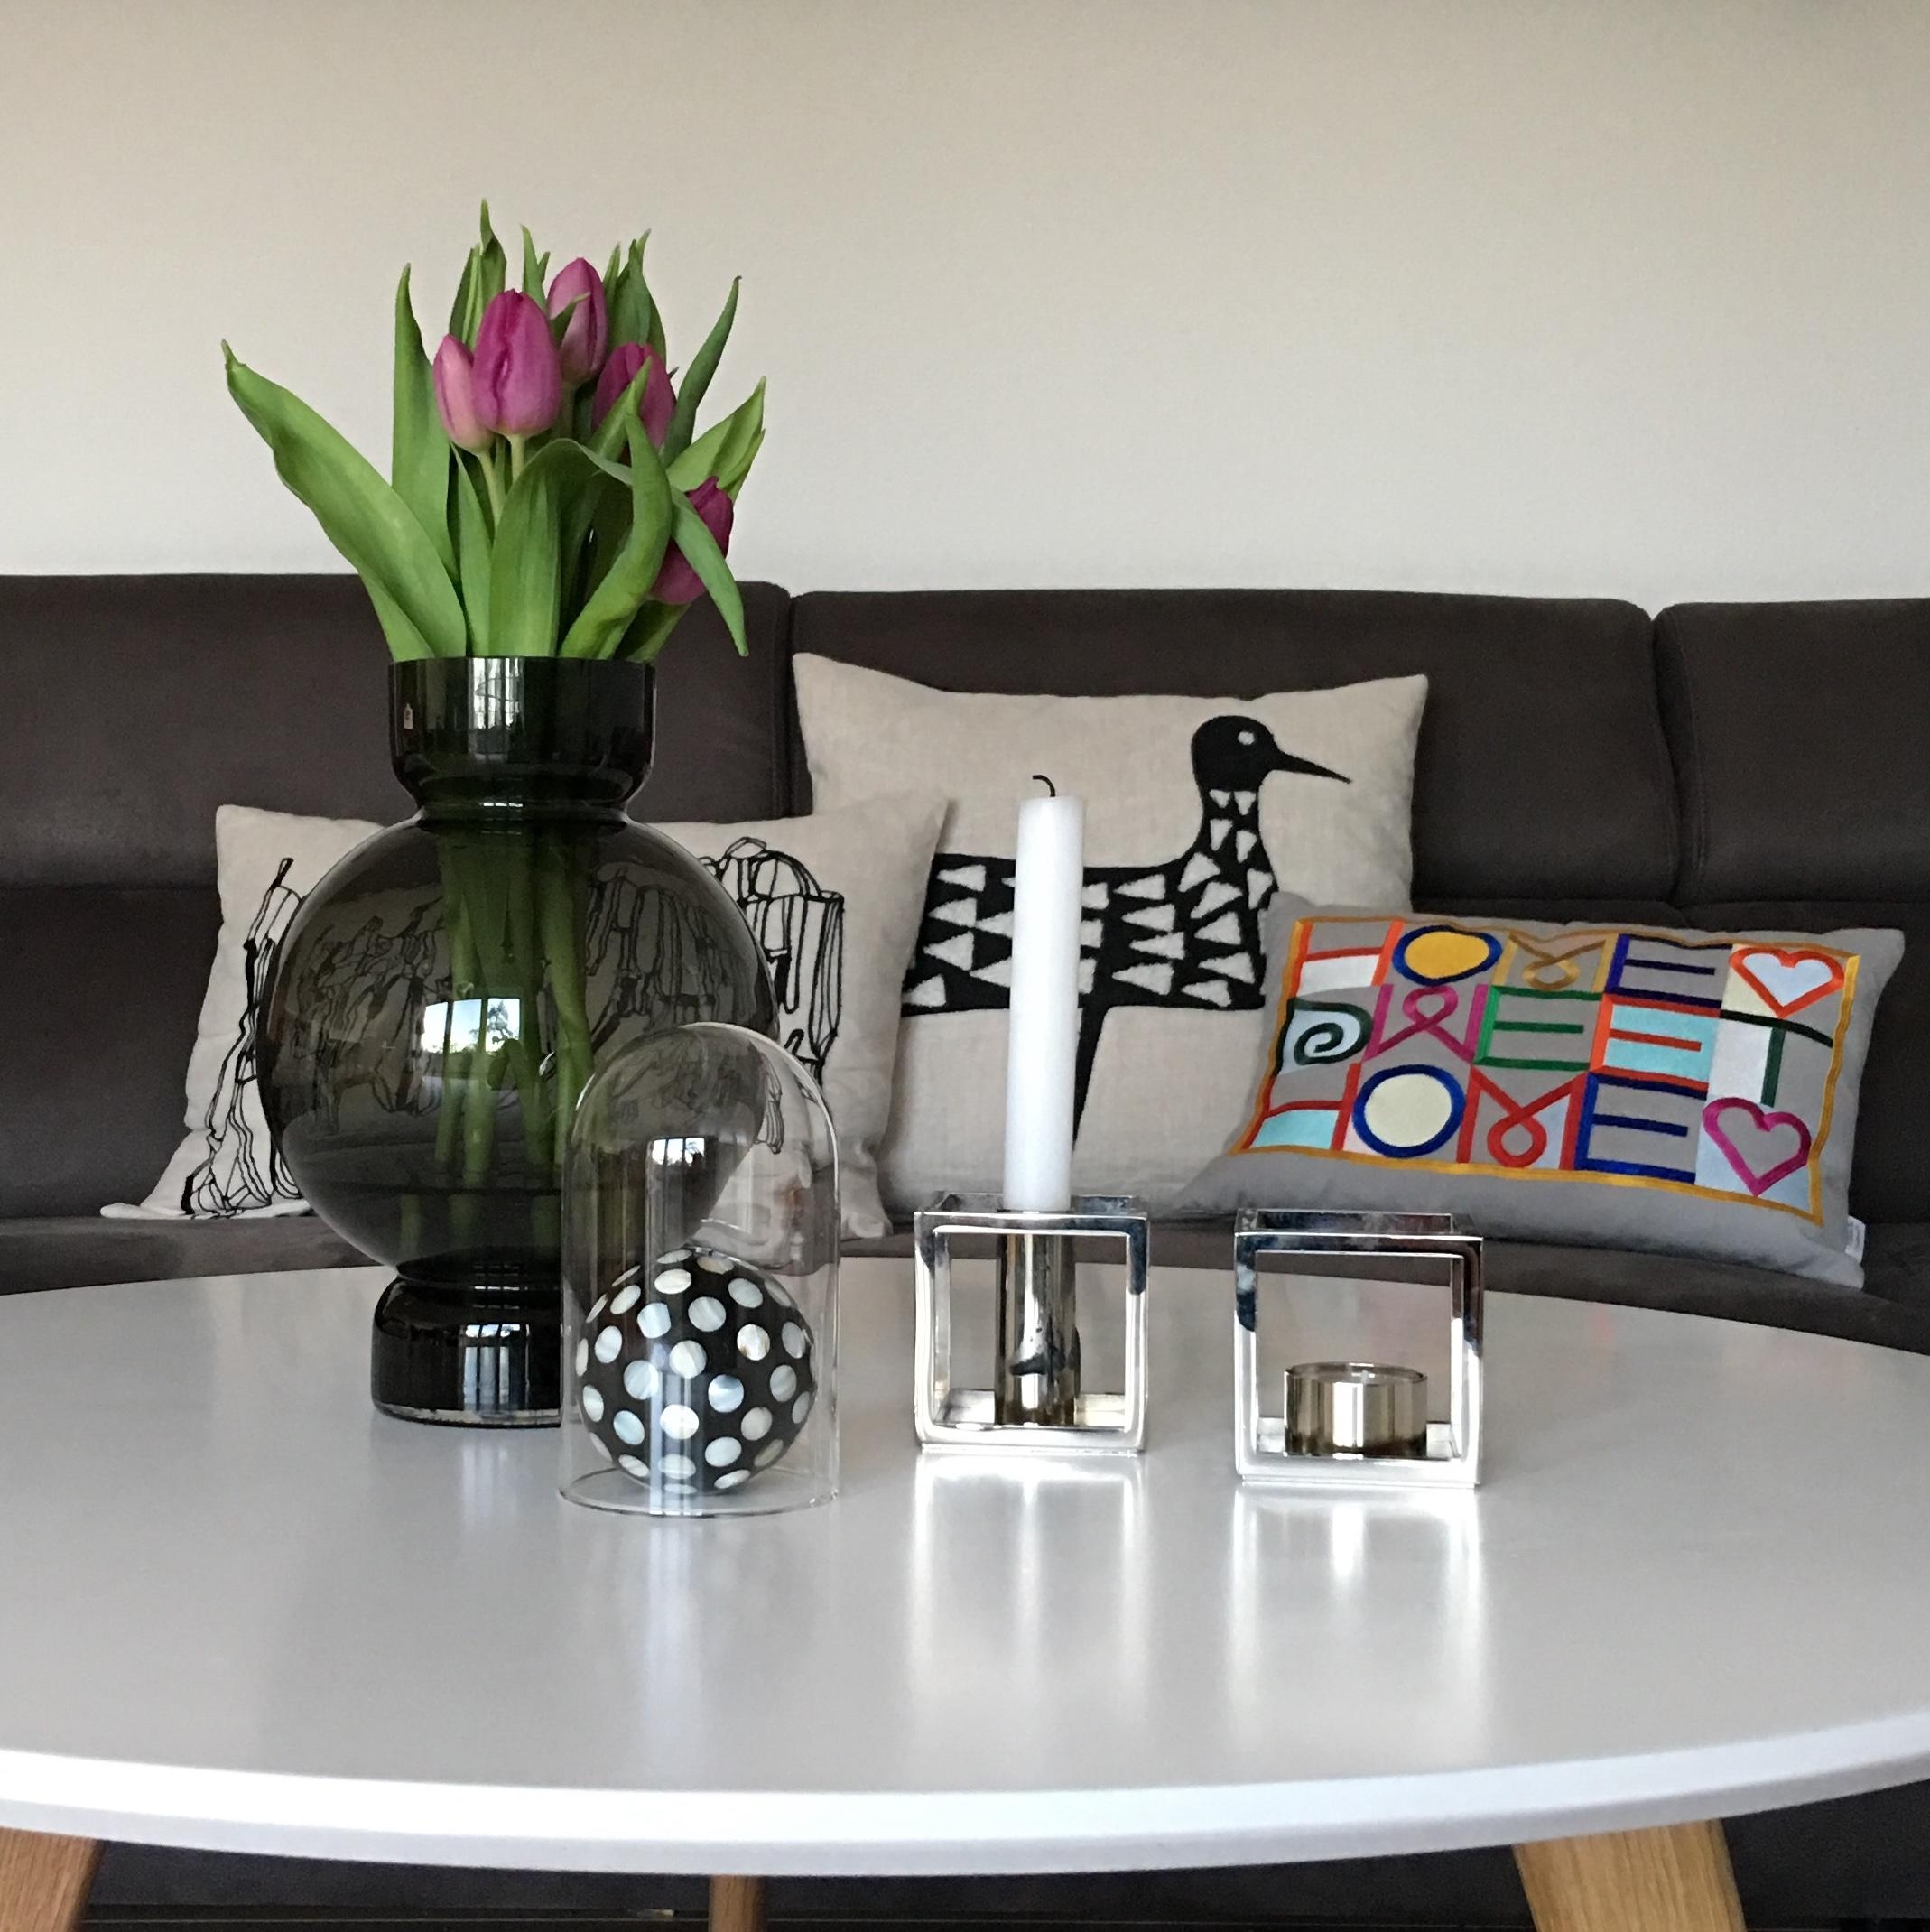 #dekoidee #dekoration #Zuhauseistesamschönsten #Homesweethome #tulpen #lieblingskissen 